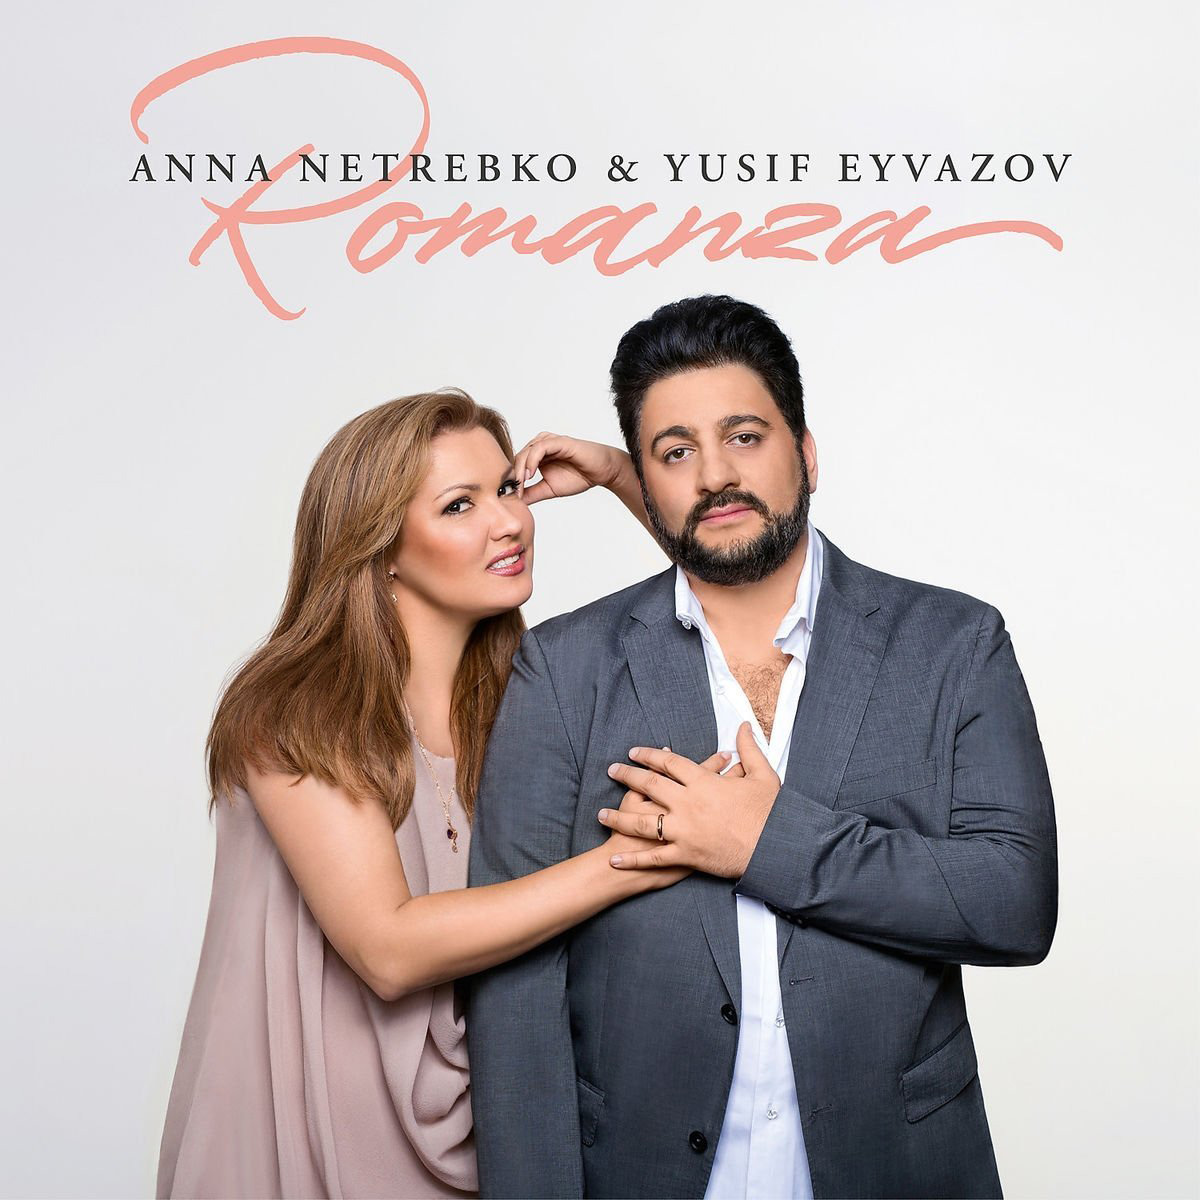 Anna Netrebko / Yusif Eyvazov: a settembre il nuovo CD in duo